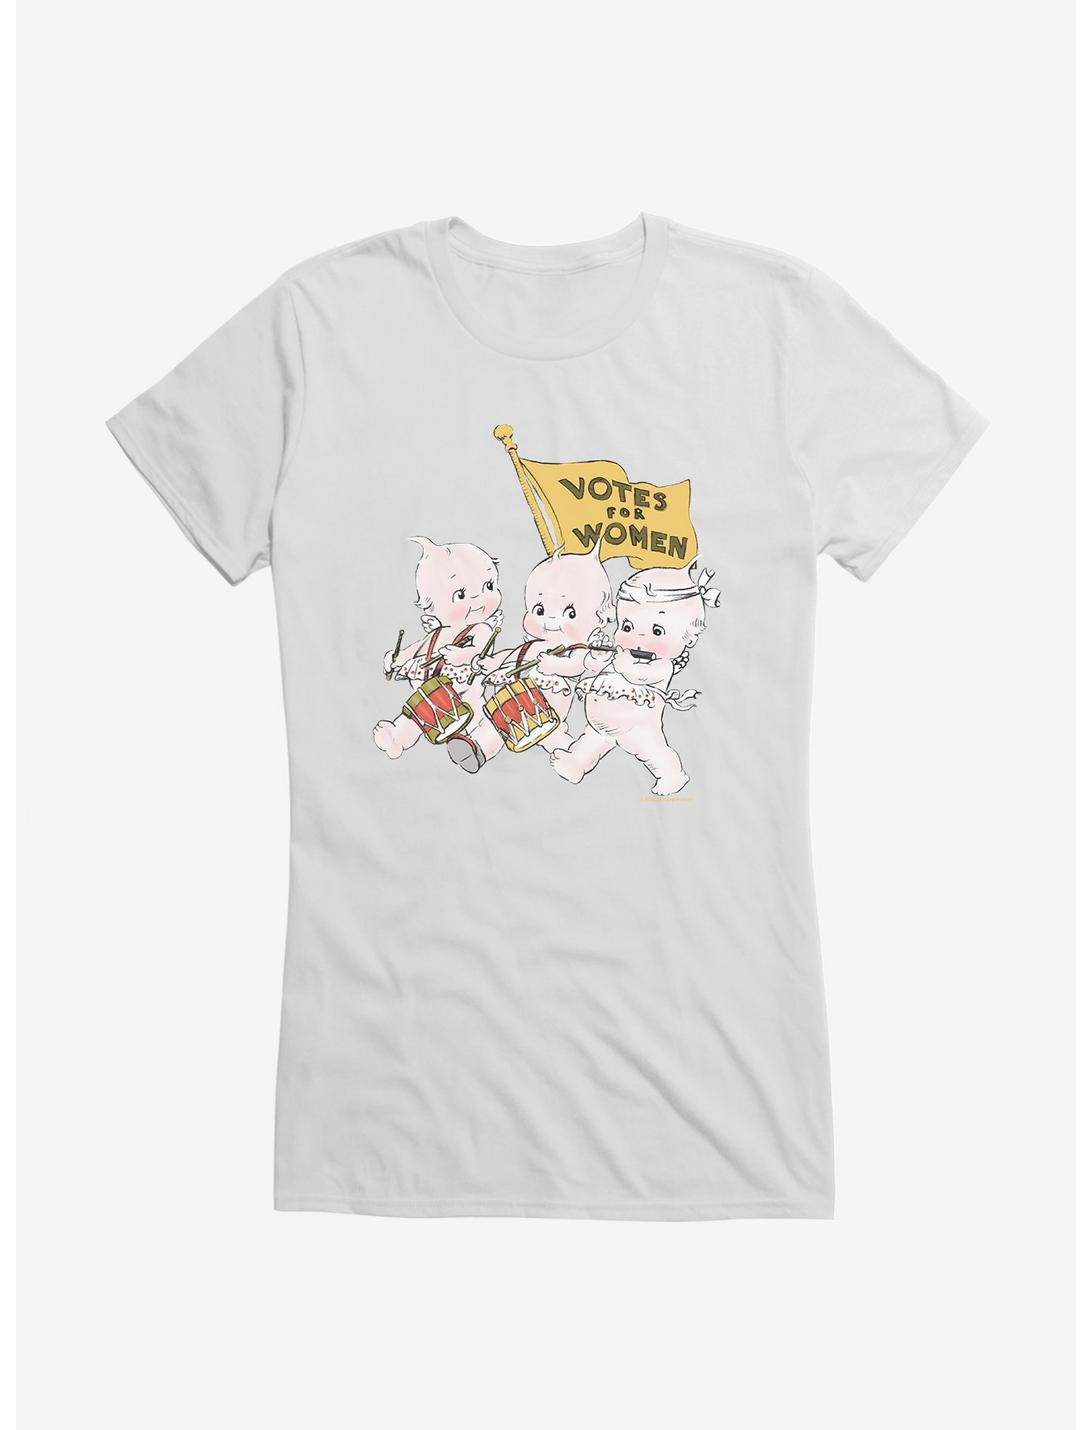 Kewpie Votes For Women Marching Band Girls T-Shirt, , hi-res